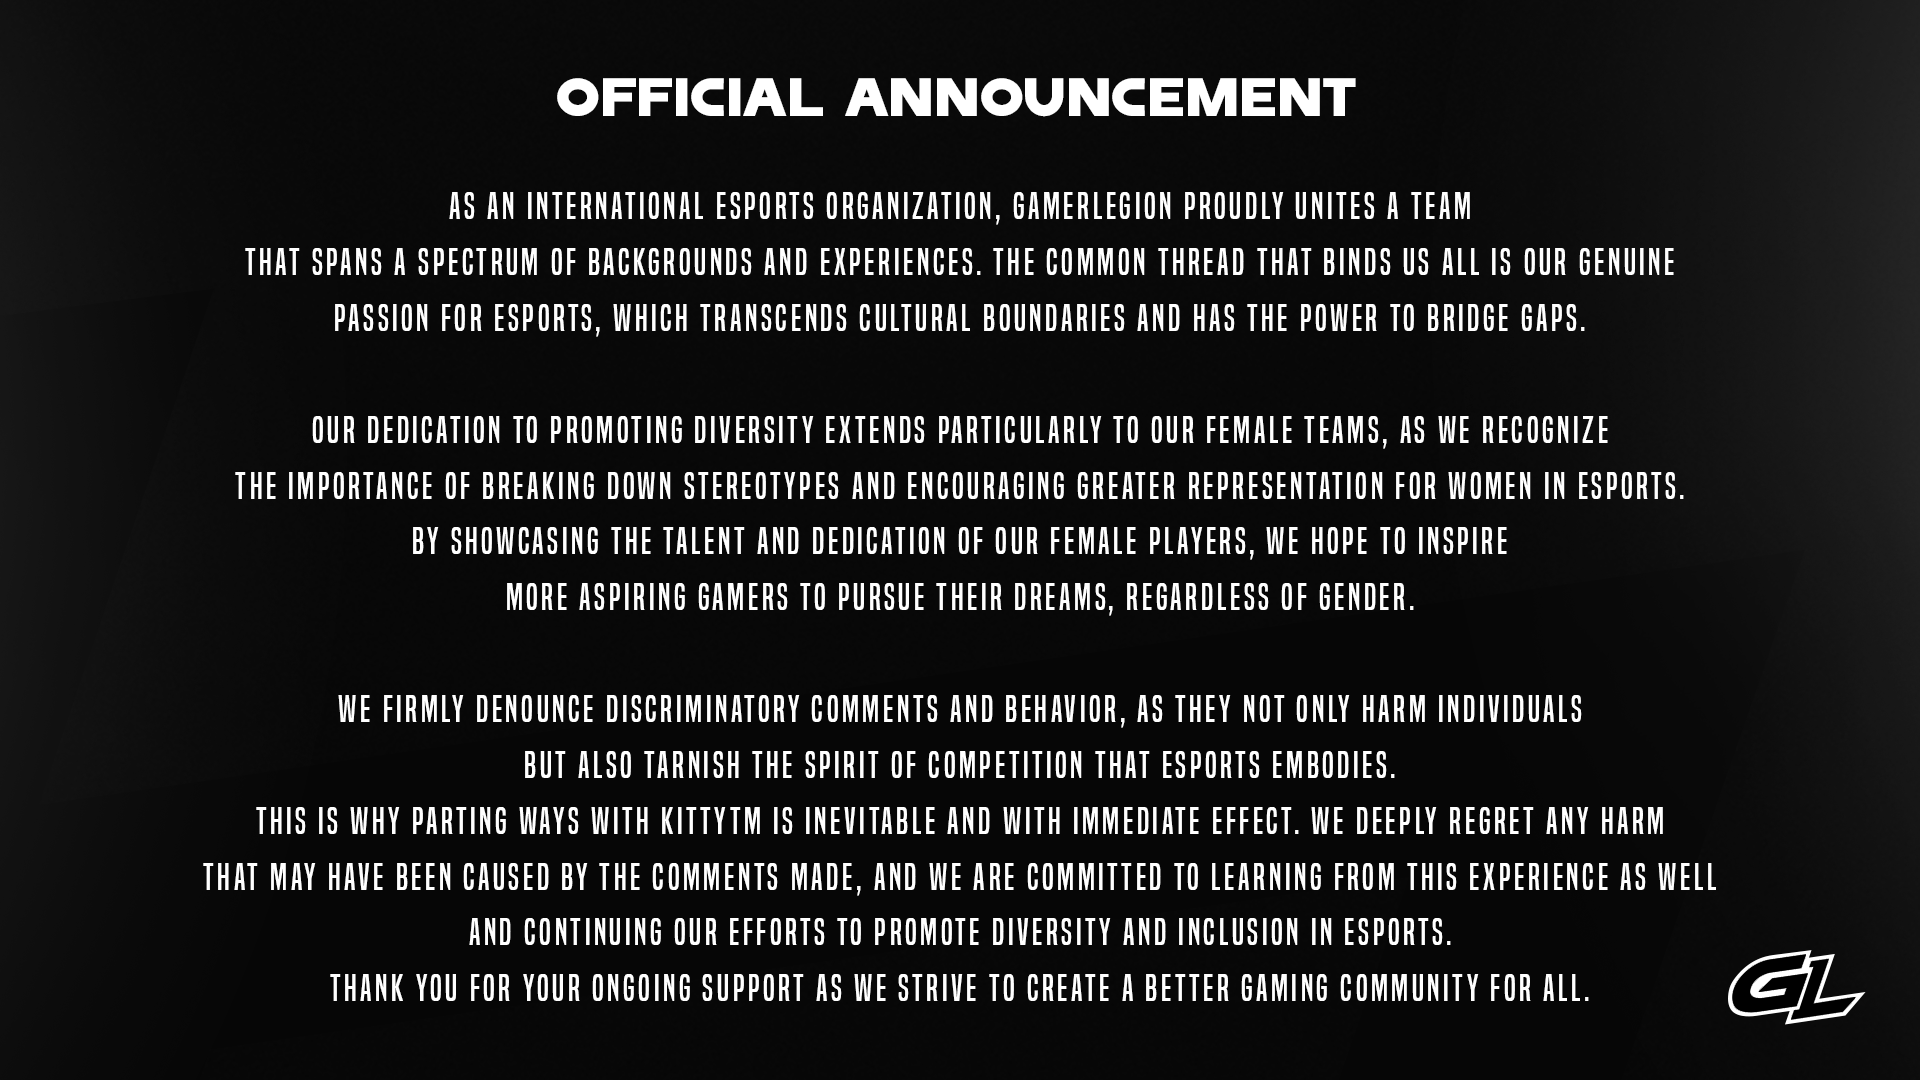 Đội tuyển CS:GO đã thông báo chia tay nữ tuyển thủ này sau vỏn vẹn 2 ngày đồng hành cùng nhau.